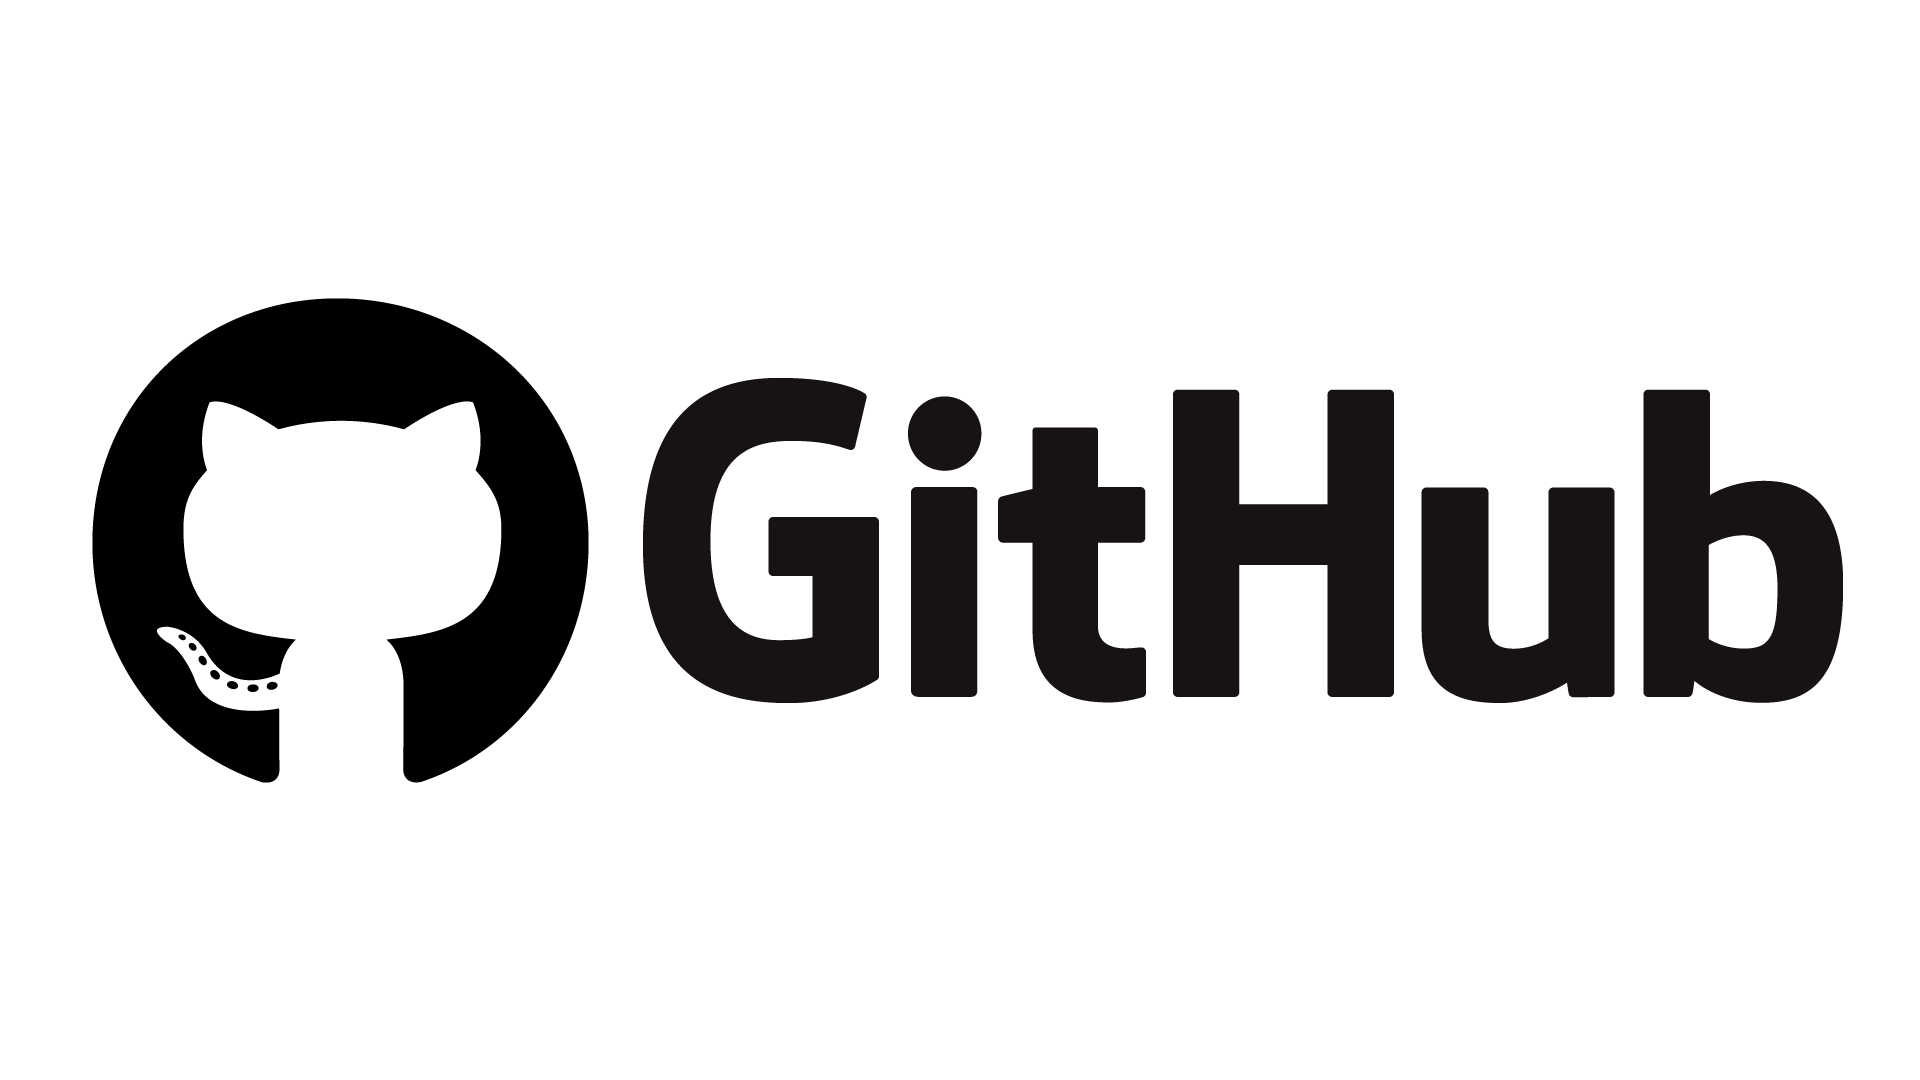 GitHub repository 생성하기